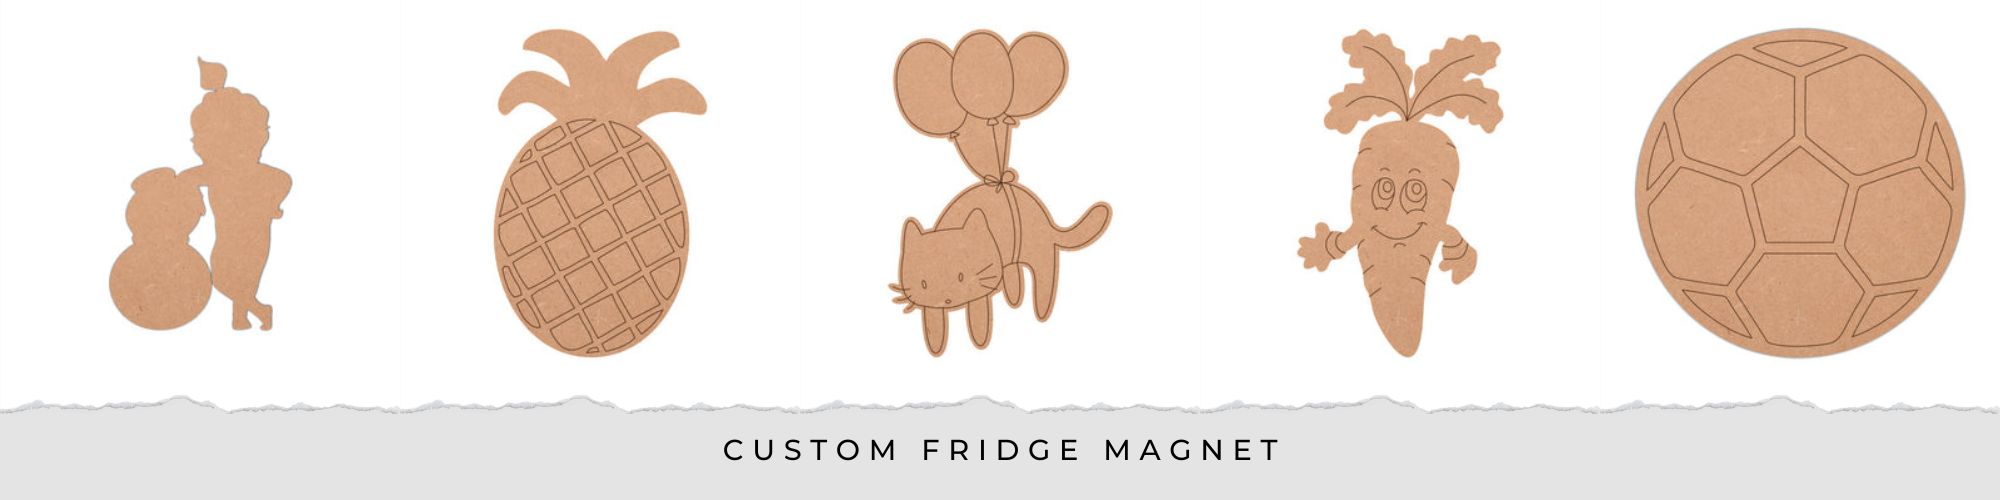 custom refrigerator magnets